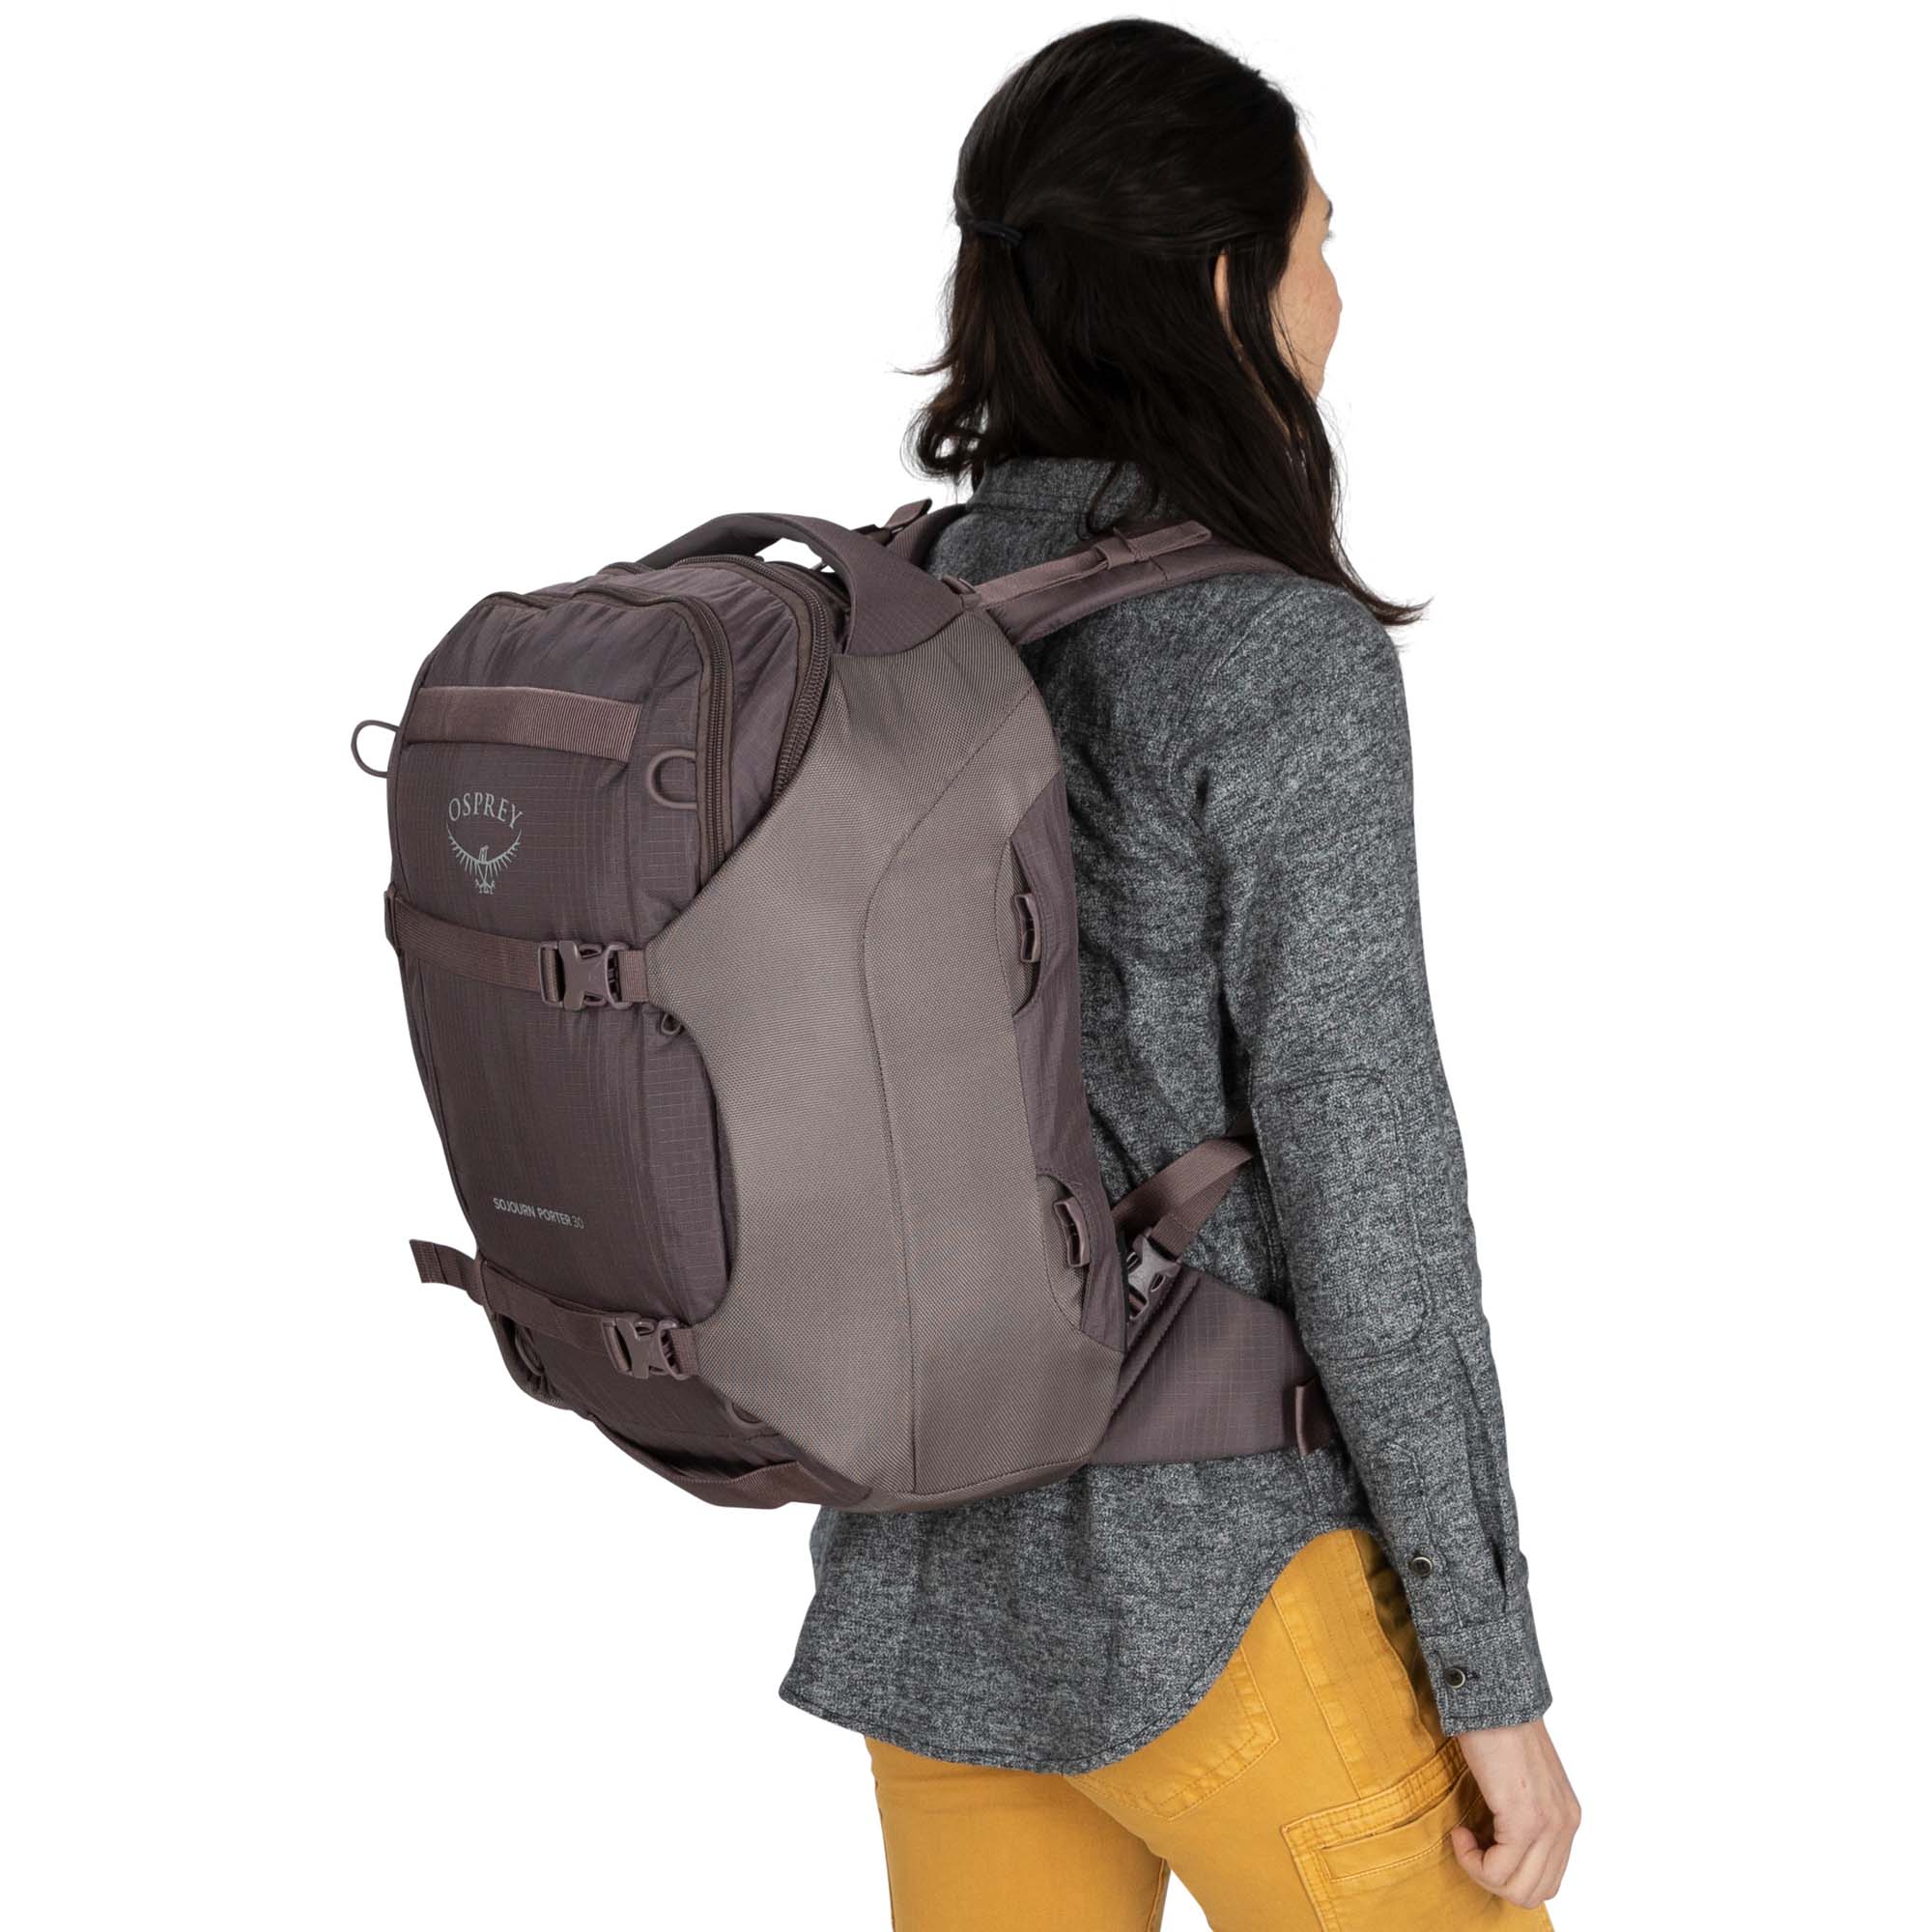 Osprey Sojourn Porter 30 Travel Backpack